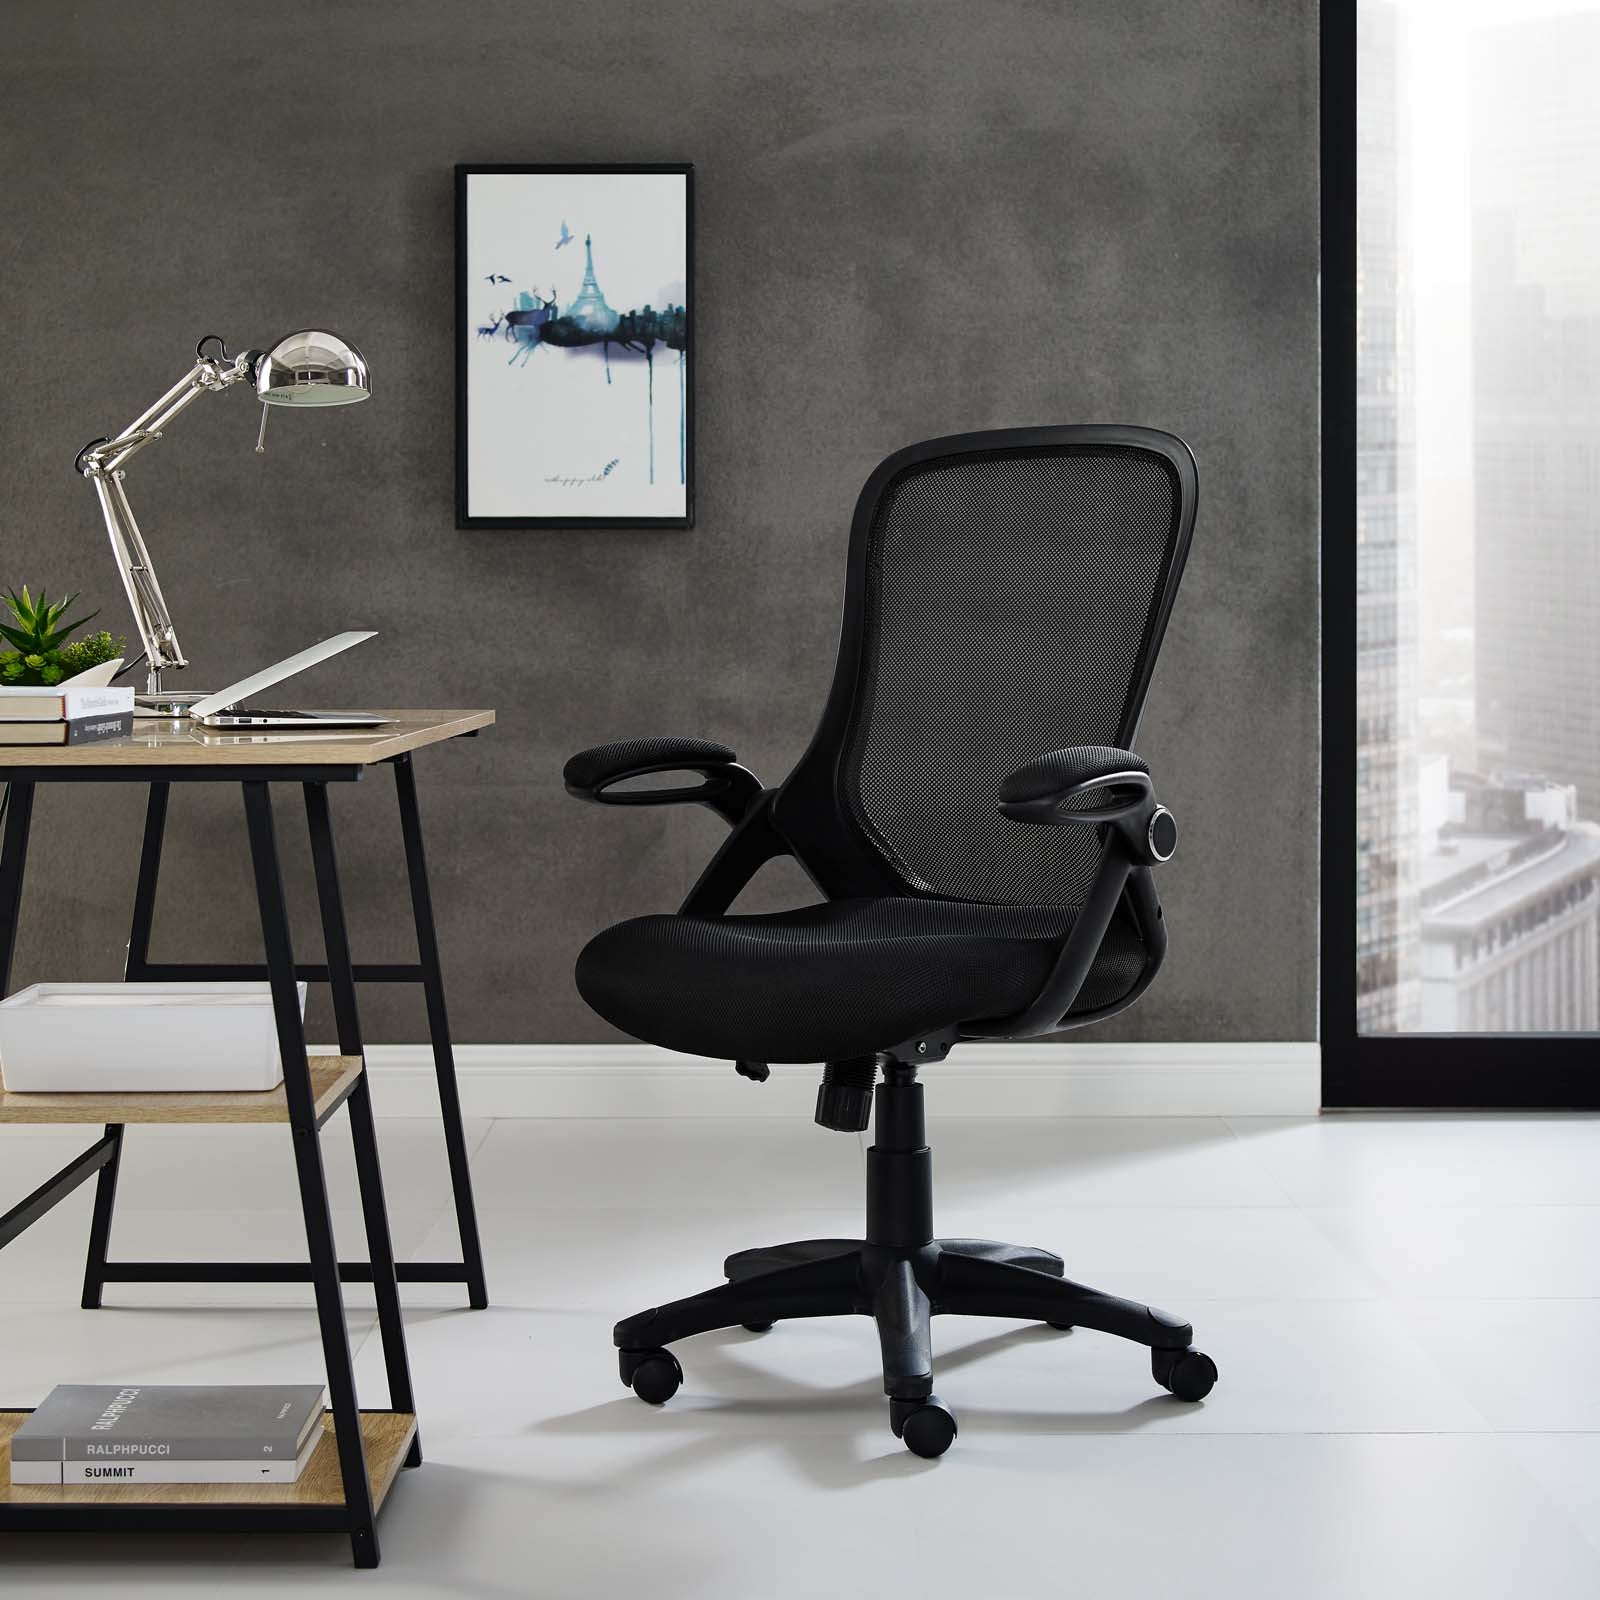 Assert Mesh Office Chair - East Shore Modern Home Furnishings